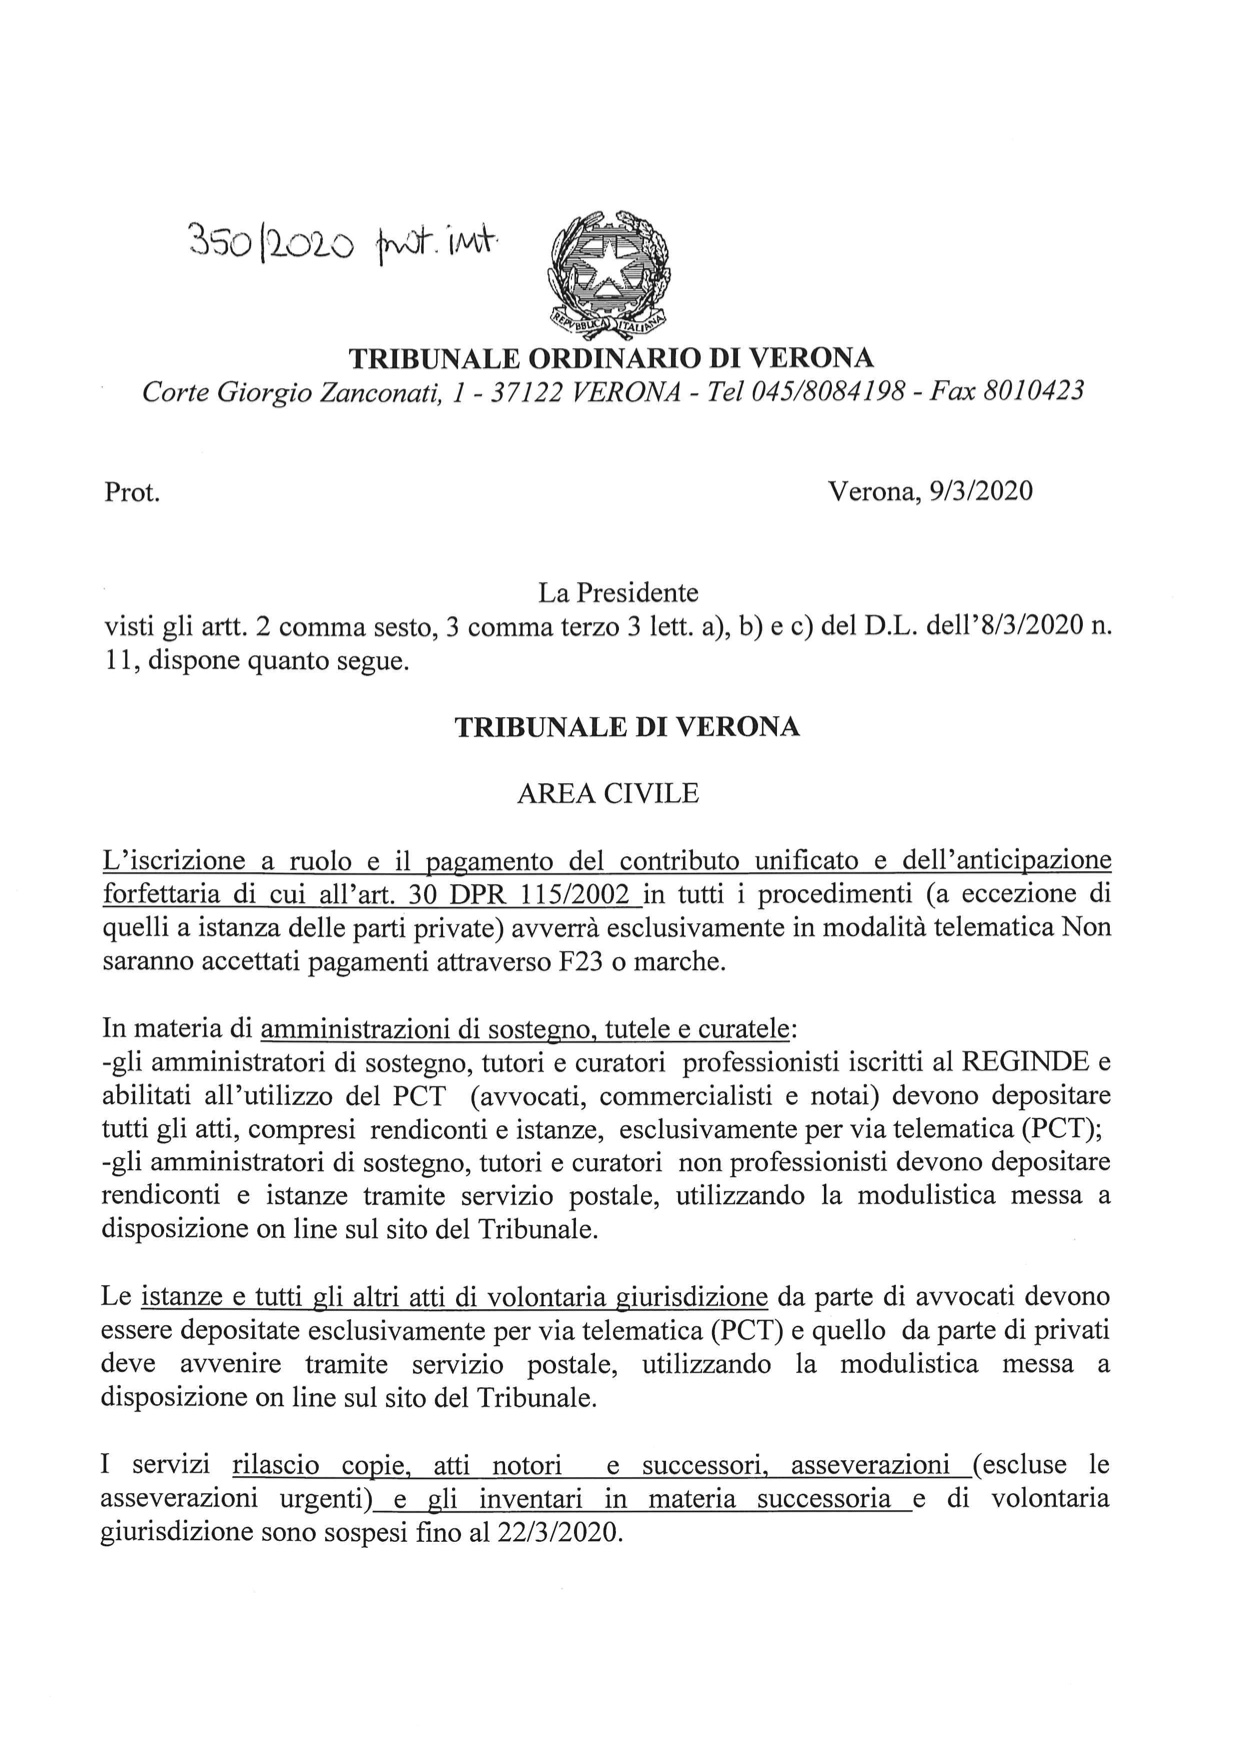 Provvedimento Presidente Tribunale di Verona del 9.10.2020 in tema di accesso alle cancellerie 